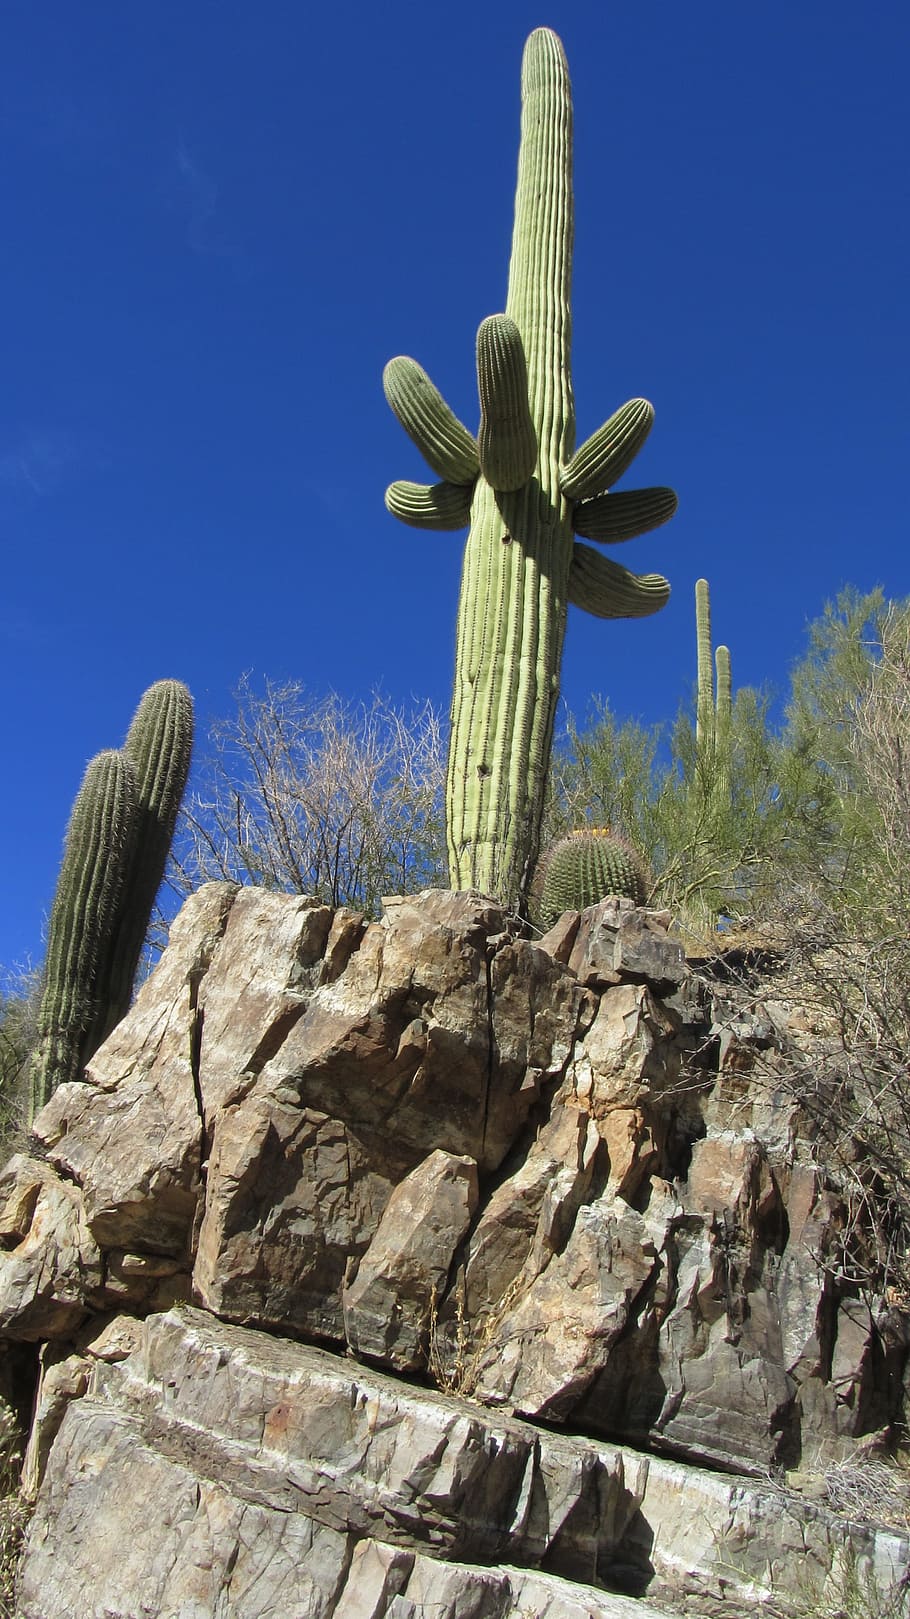 Cactus, Tucson, Arizona, Landscape, plant, natural, botanical